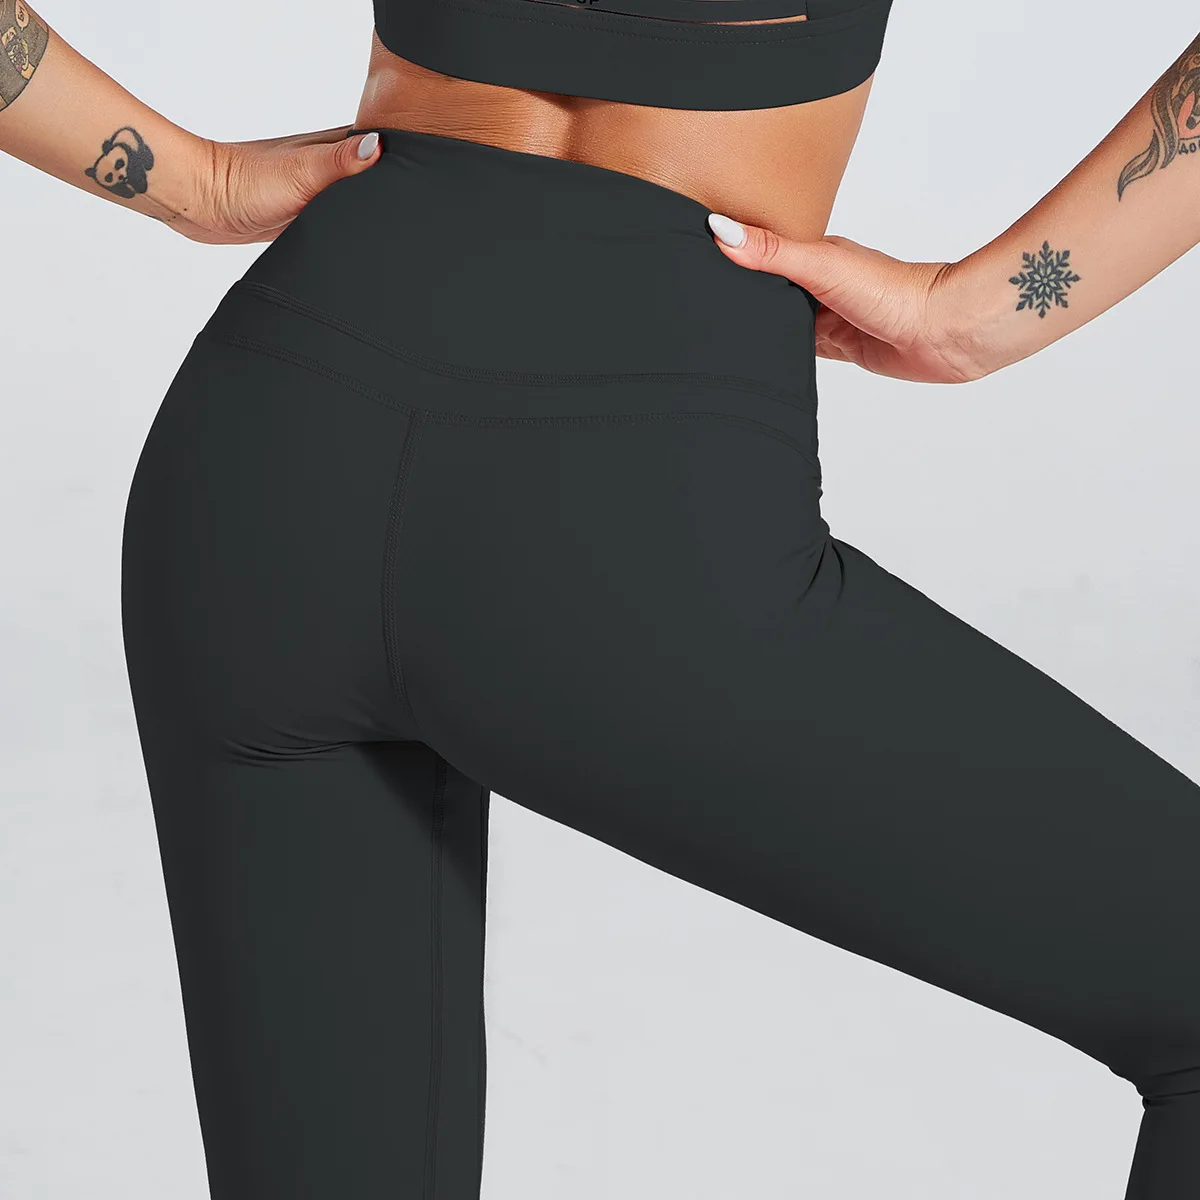 Мягкие на ощупь Спортивные Фитнес Бесшовные Леггинсы для женщин эластичные штаны с высокой талией для спортзала йоги тренировочные спортивные простые для бега фитнеса